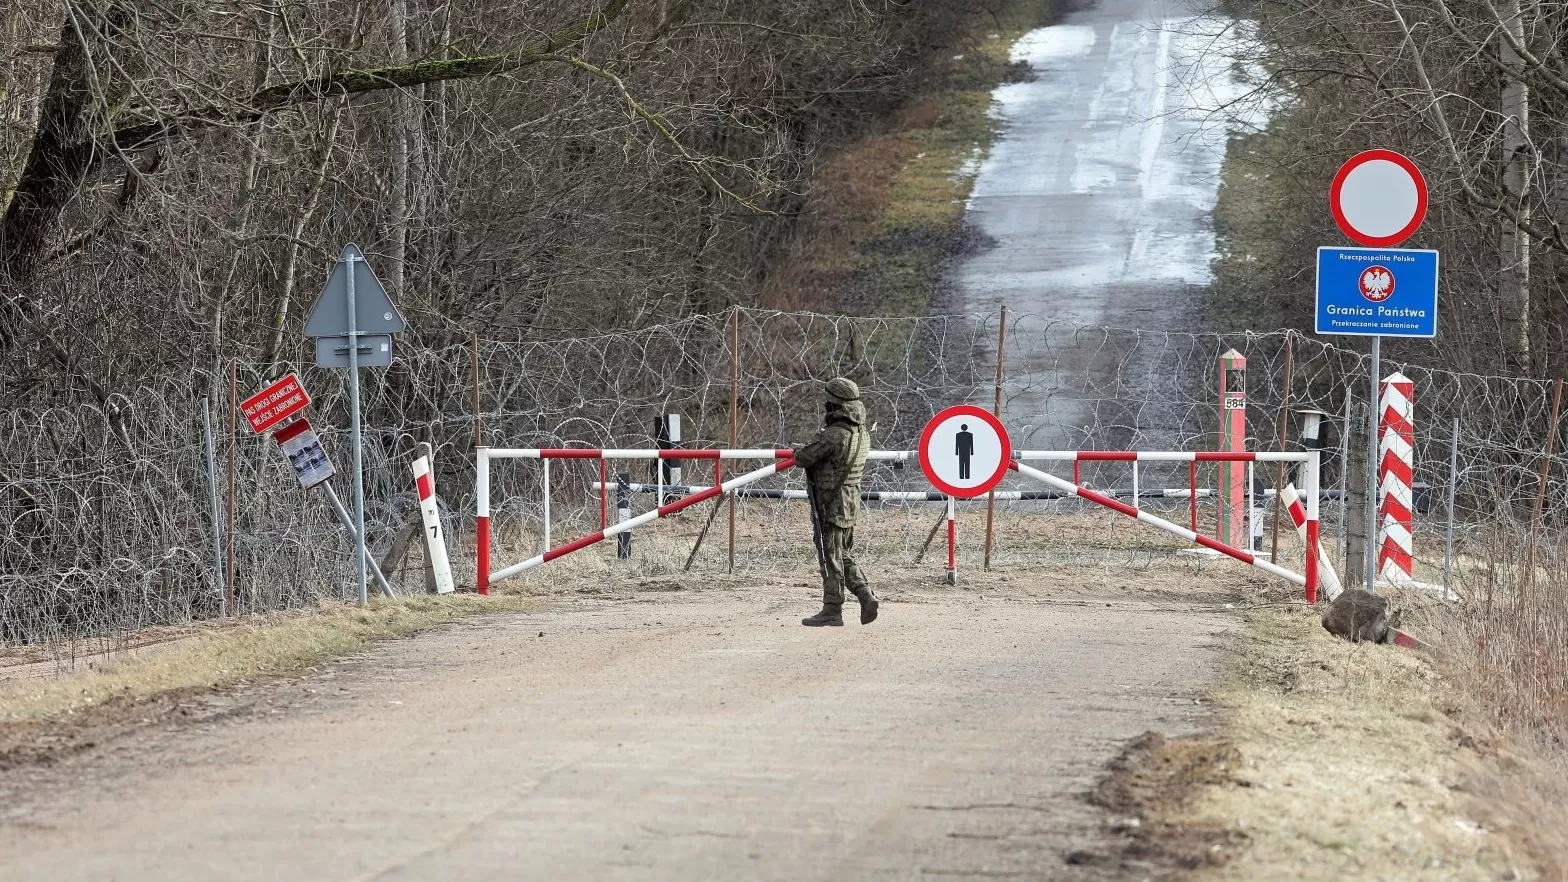 Լեհաստանից`  Բելառուսի հետ սահմանն ամբողջապես փակելու  հնարավոր որոշման մասին